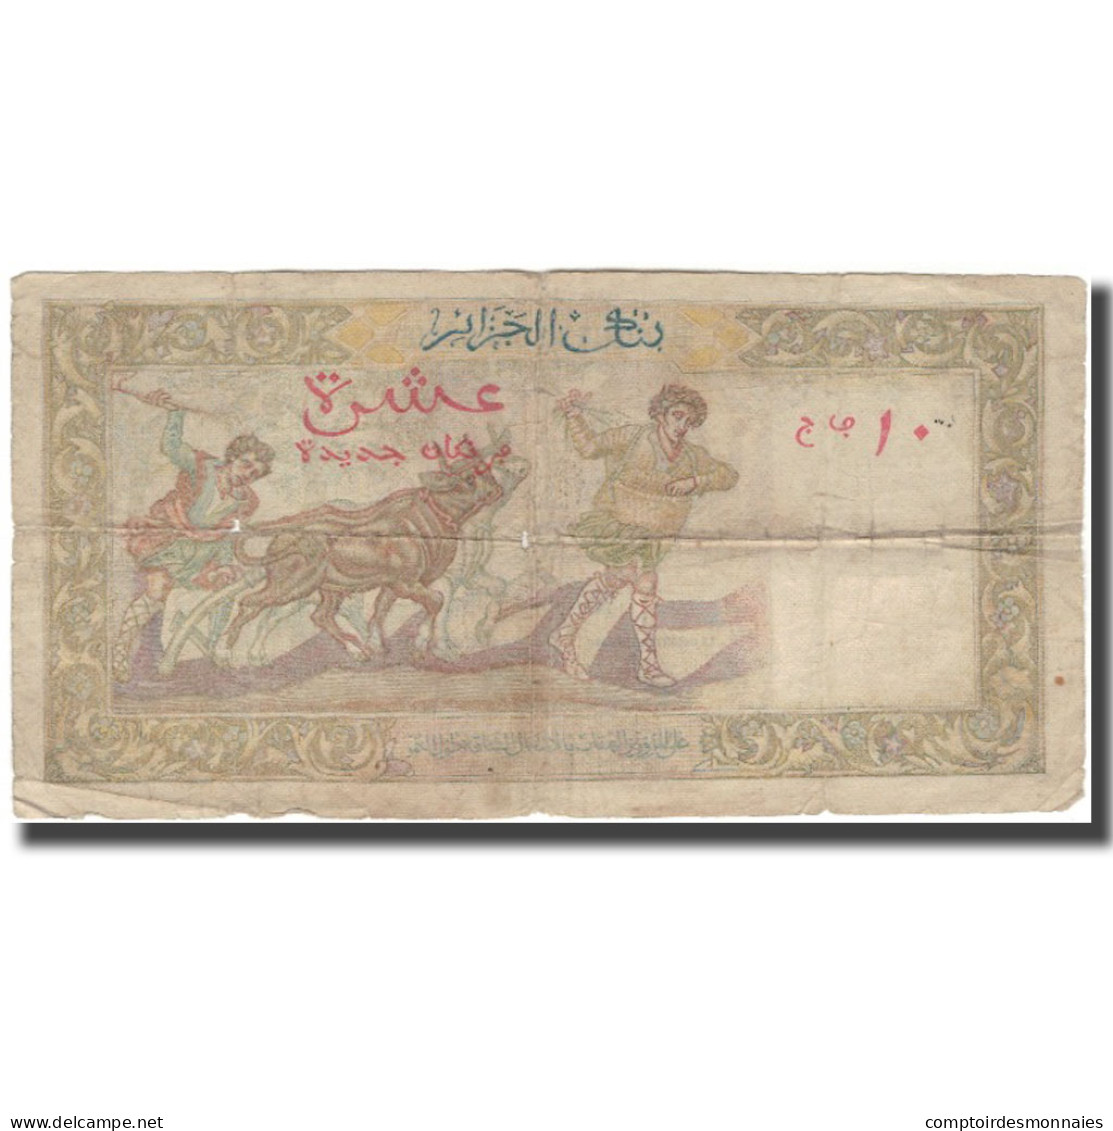 Billet, Algeria, 10 Nouveaux Francs, 1961-02-10, KM:119a, B+ - Algerien